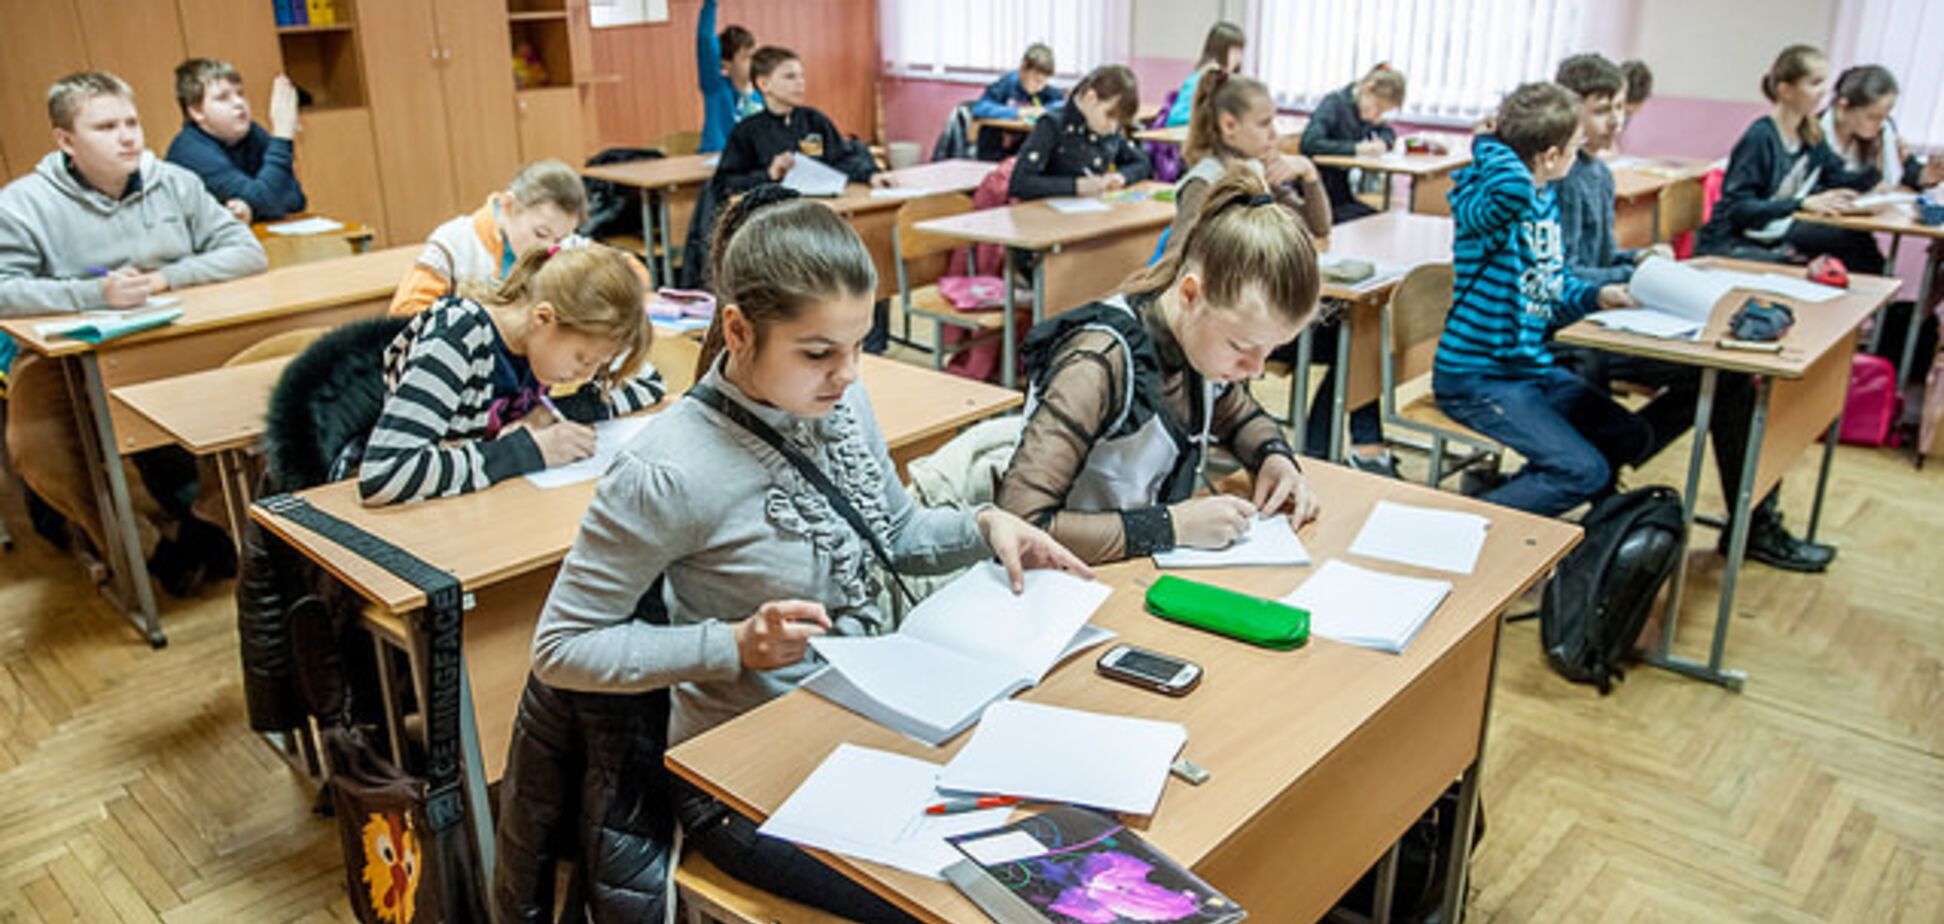 Отрезала челки и заклеила рты: в школе Киева разгорелся скандал из-за учительницы